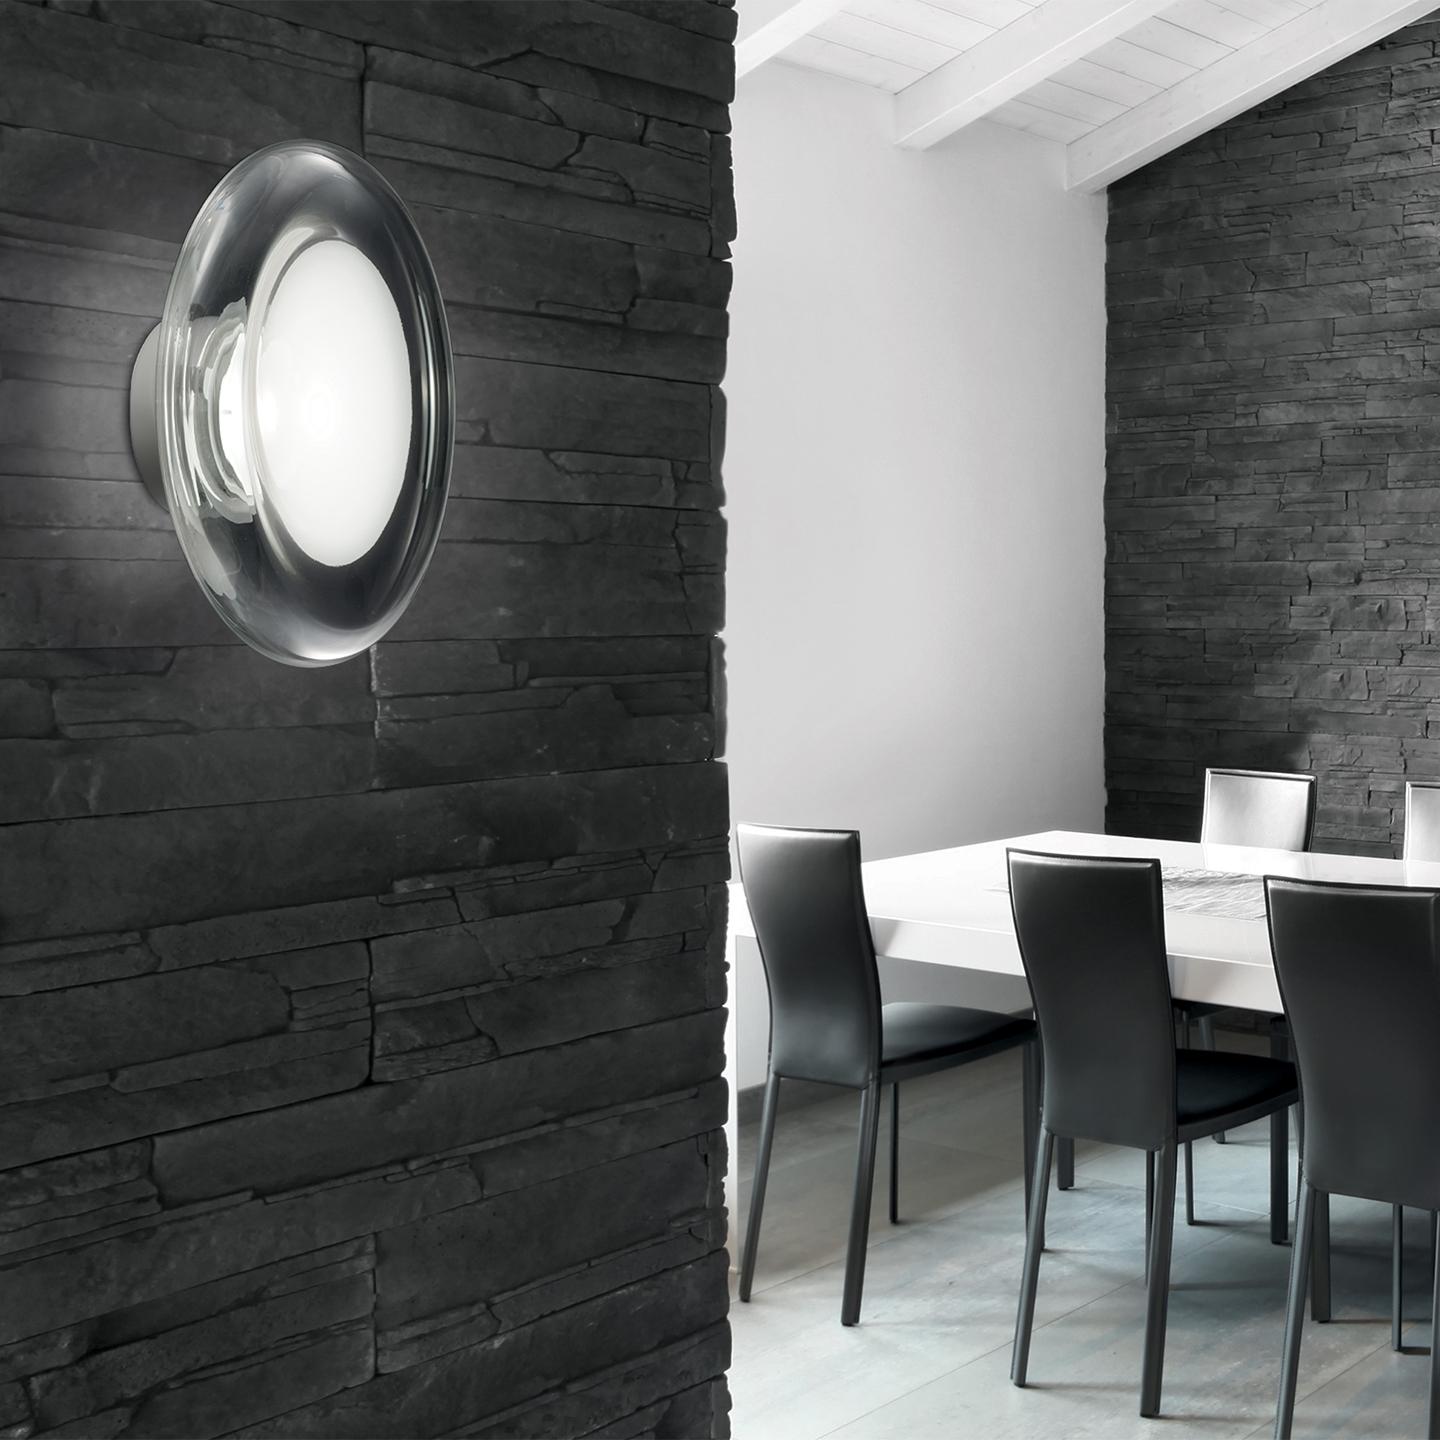 Die Keyra schafft mit ihrer schönen, zeitgenössischen Form und der einzigartigen Oberfläche ein wunderschönes Licht für Ihr Zuhause, Ihr Büro oder Ihre Geschäftsräume. Die 2011 von Roberto Paoli entworfene Keyra hat eine mundgeblasene Form, die in